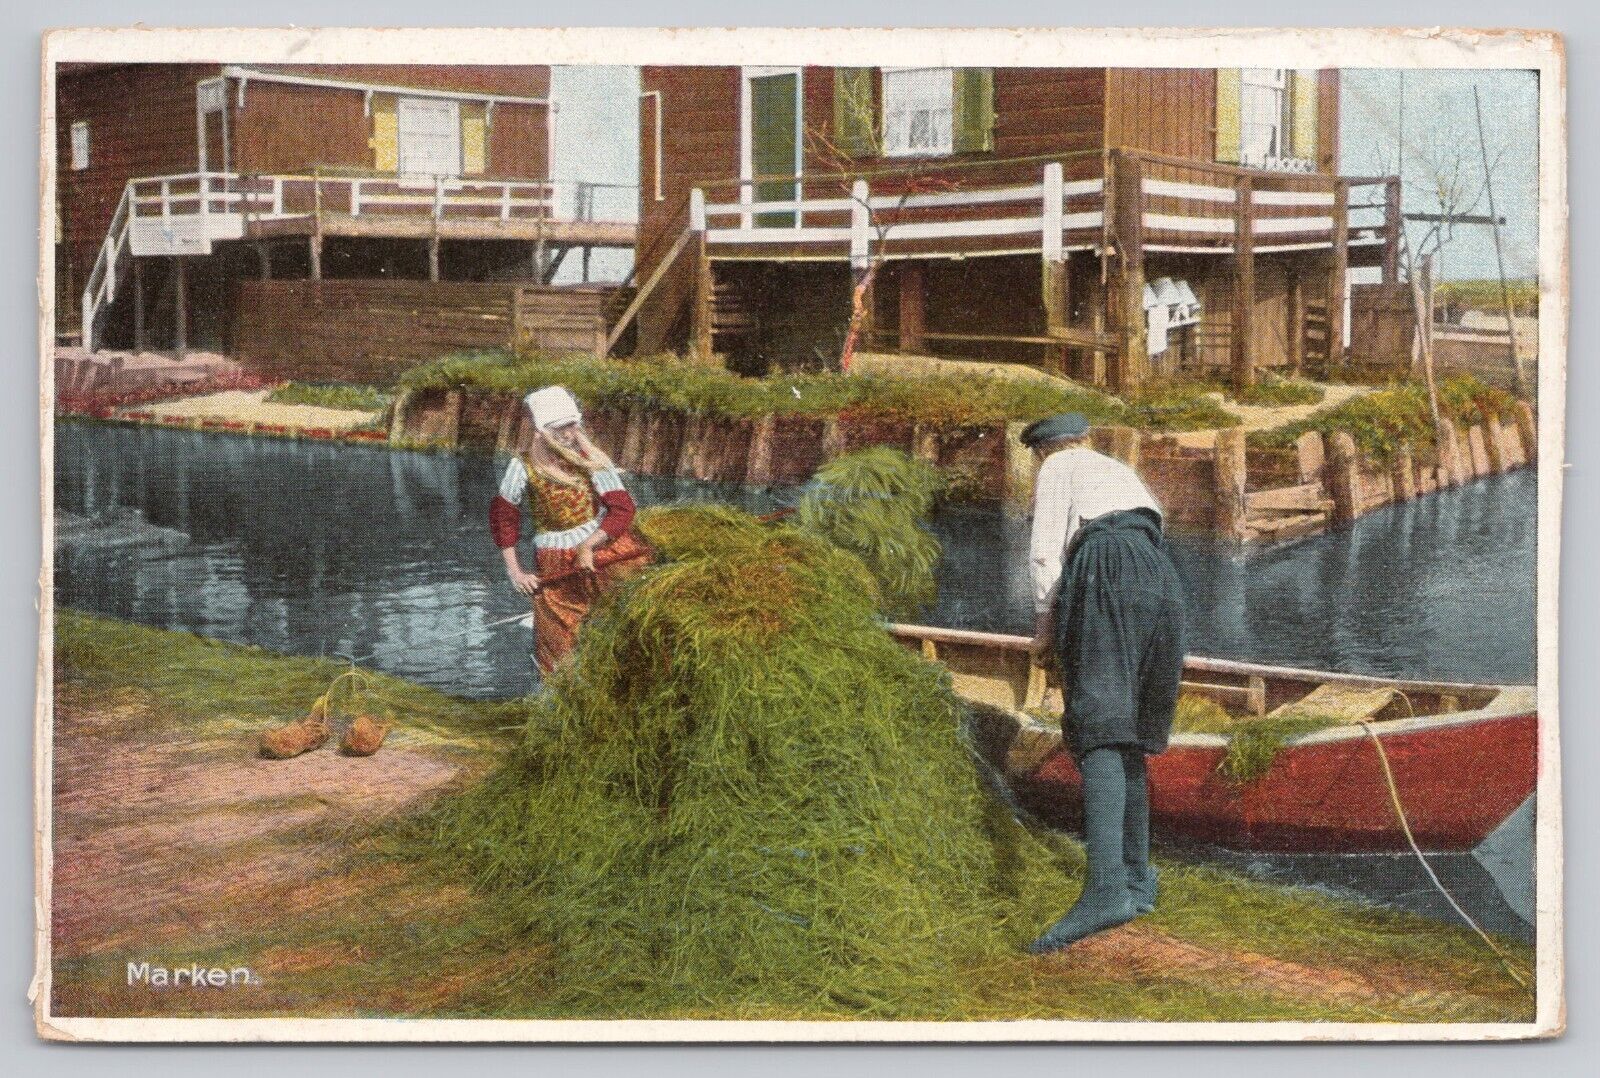 Marken Netherlands, Boy & Girl Loading Grass into Boat, Vintage Postcard